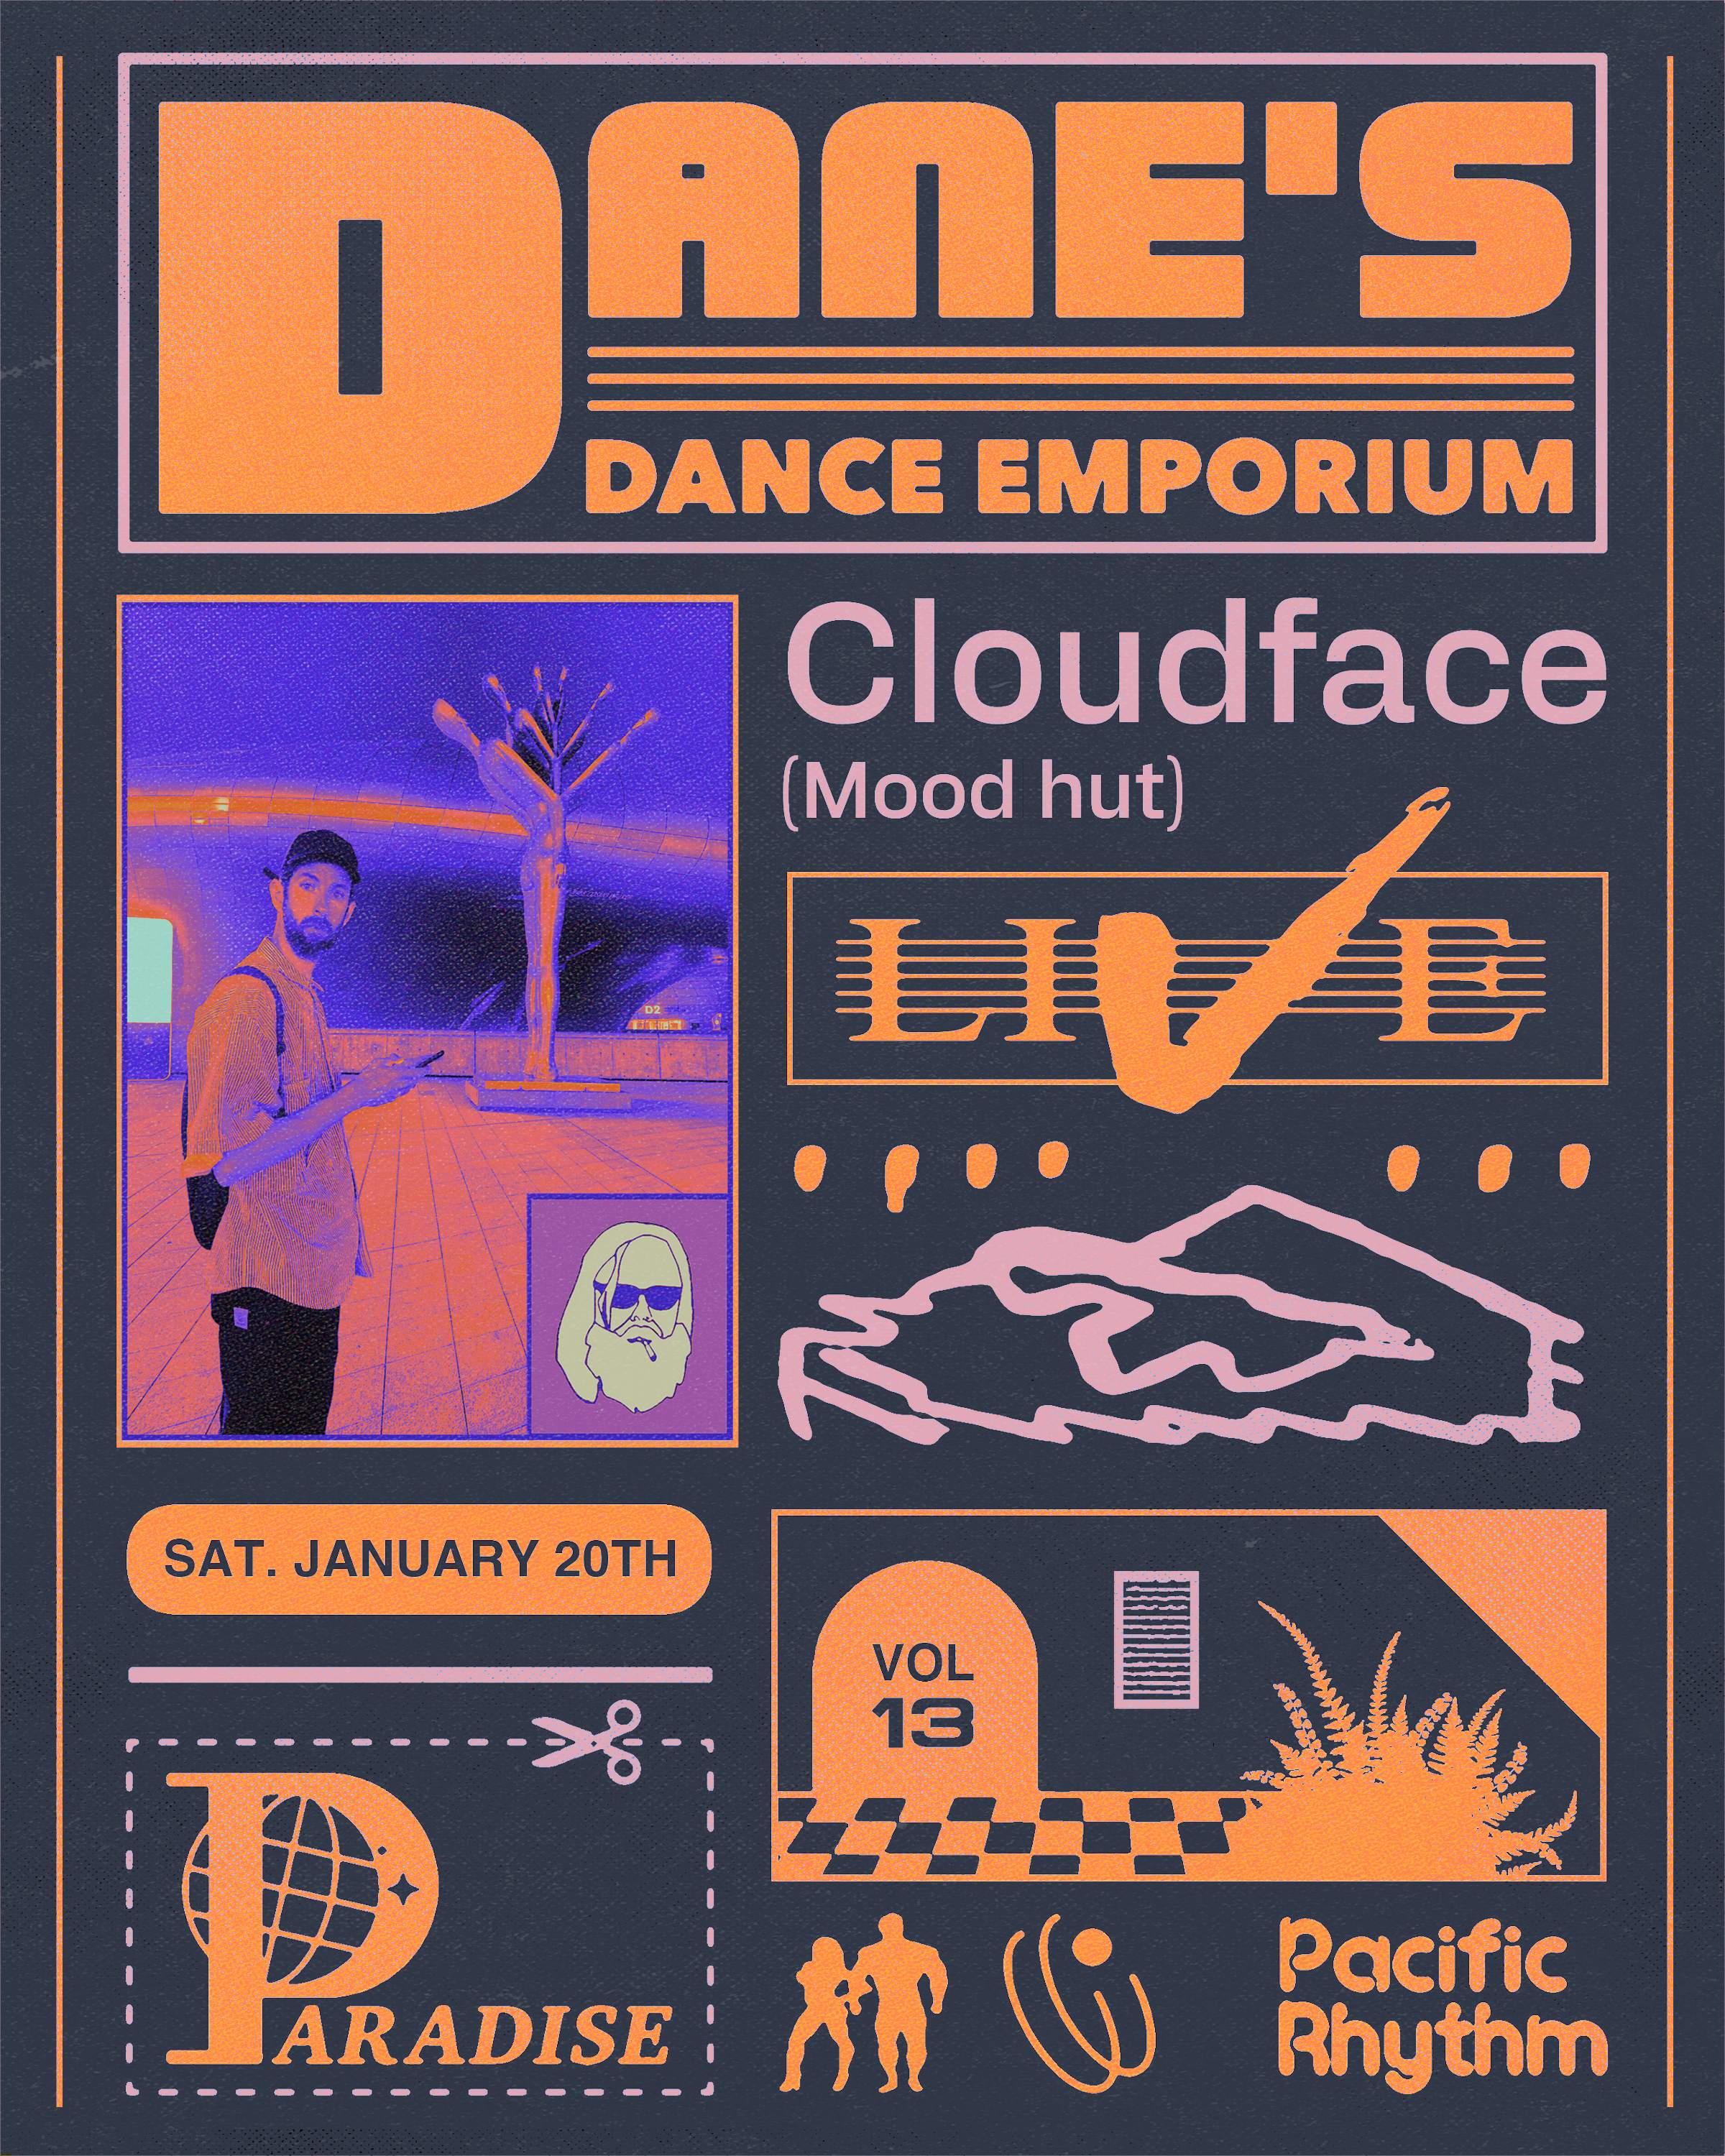 Dane's Dance Emporium: Vol. 13 feat. Cloudface - Página frontal